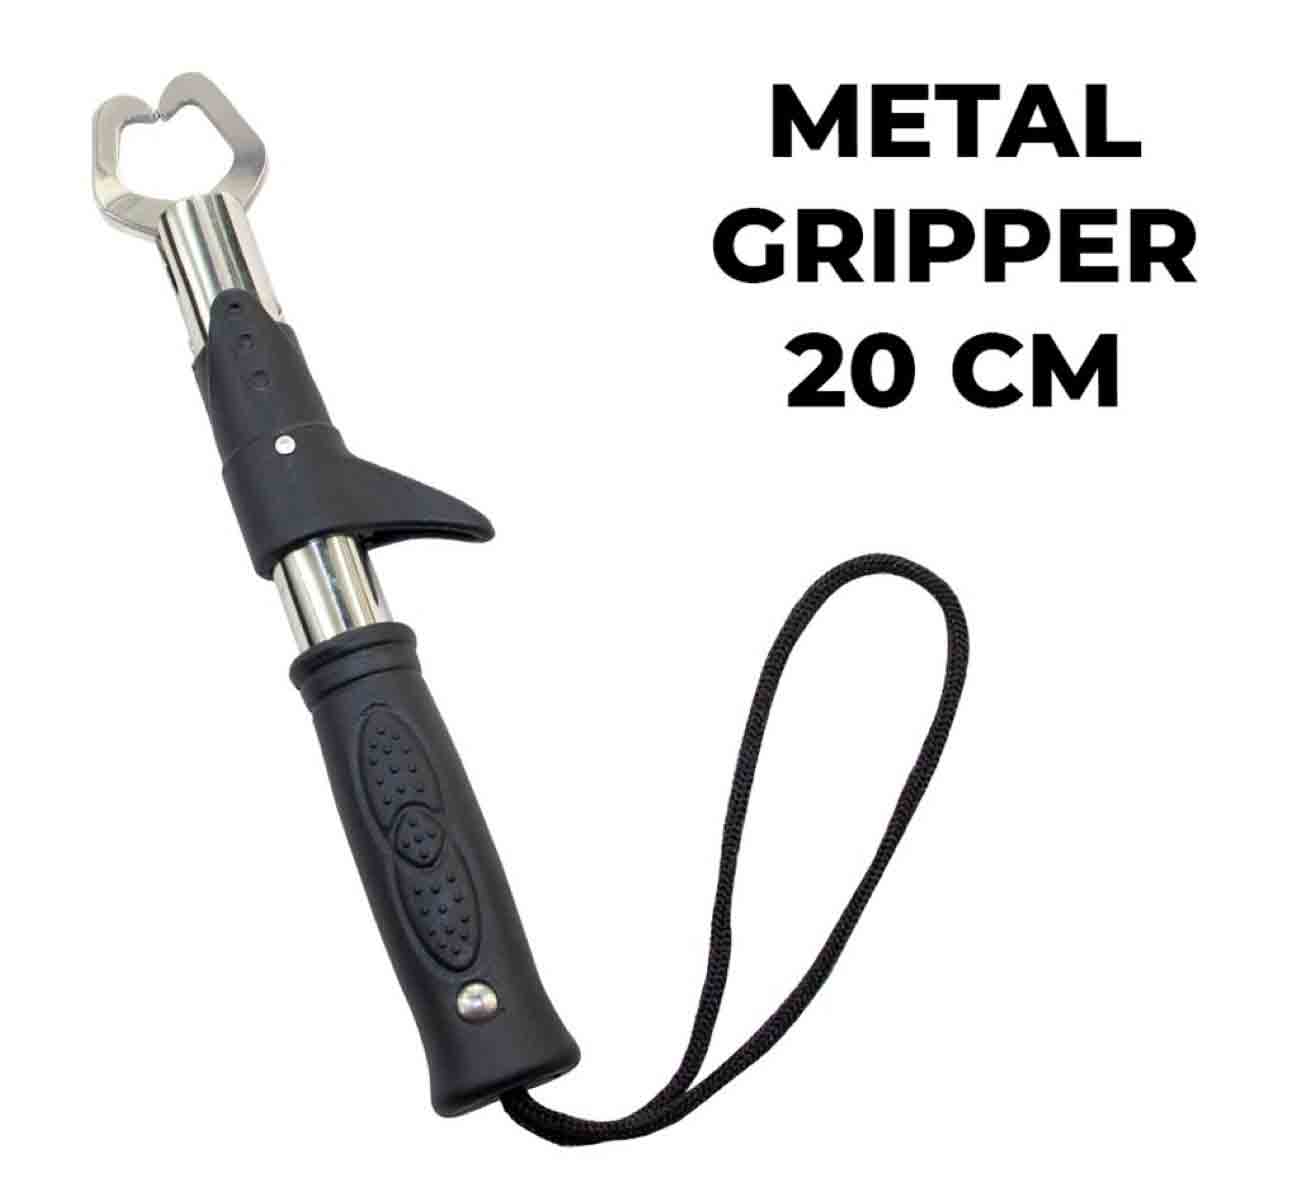 Bauer Metal Fish Gripper 20cm,bauer kalitesinde dişli avlarınızda ve tehlikeli balıklarda sorun yaşamamak için kullanılan metal 20cm boyunda fish gripper